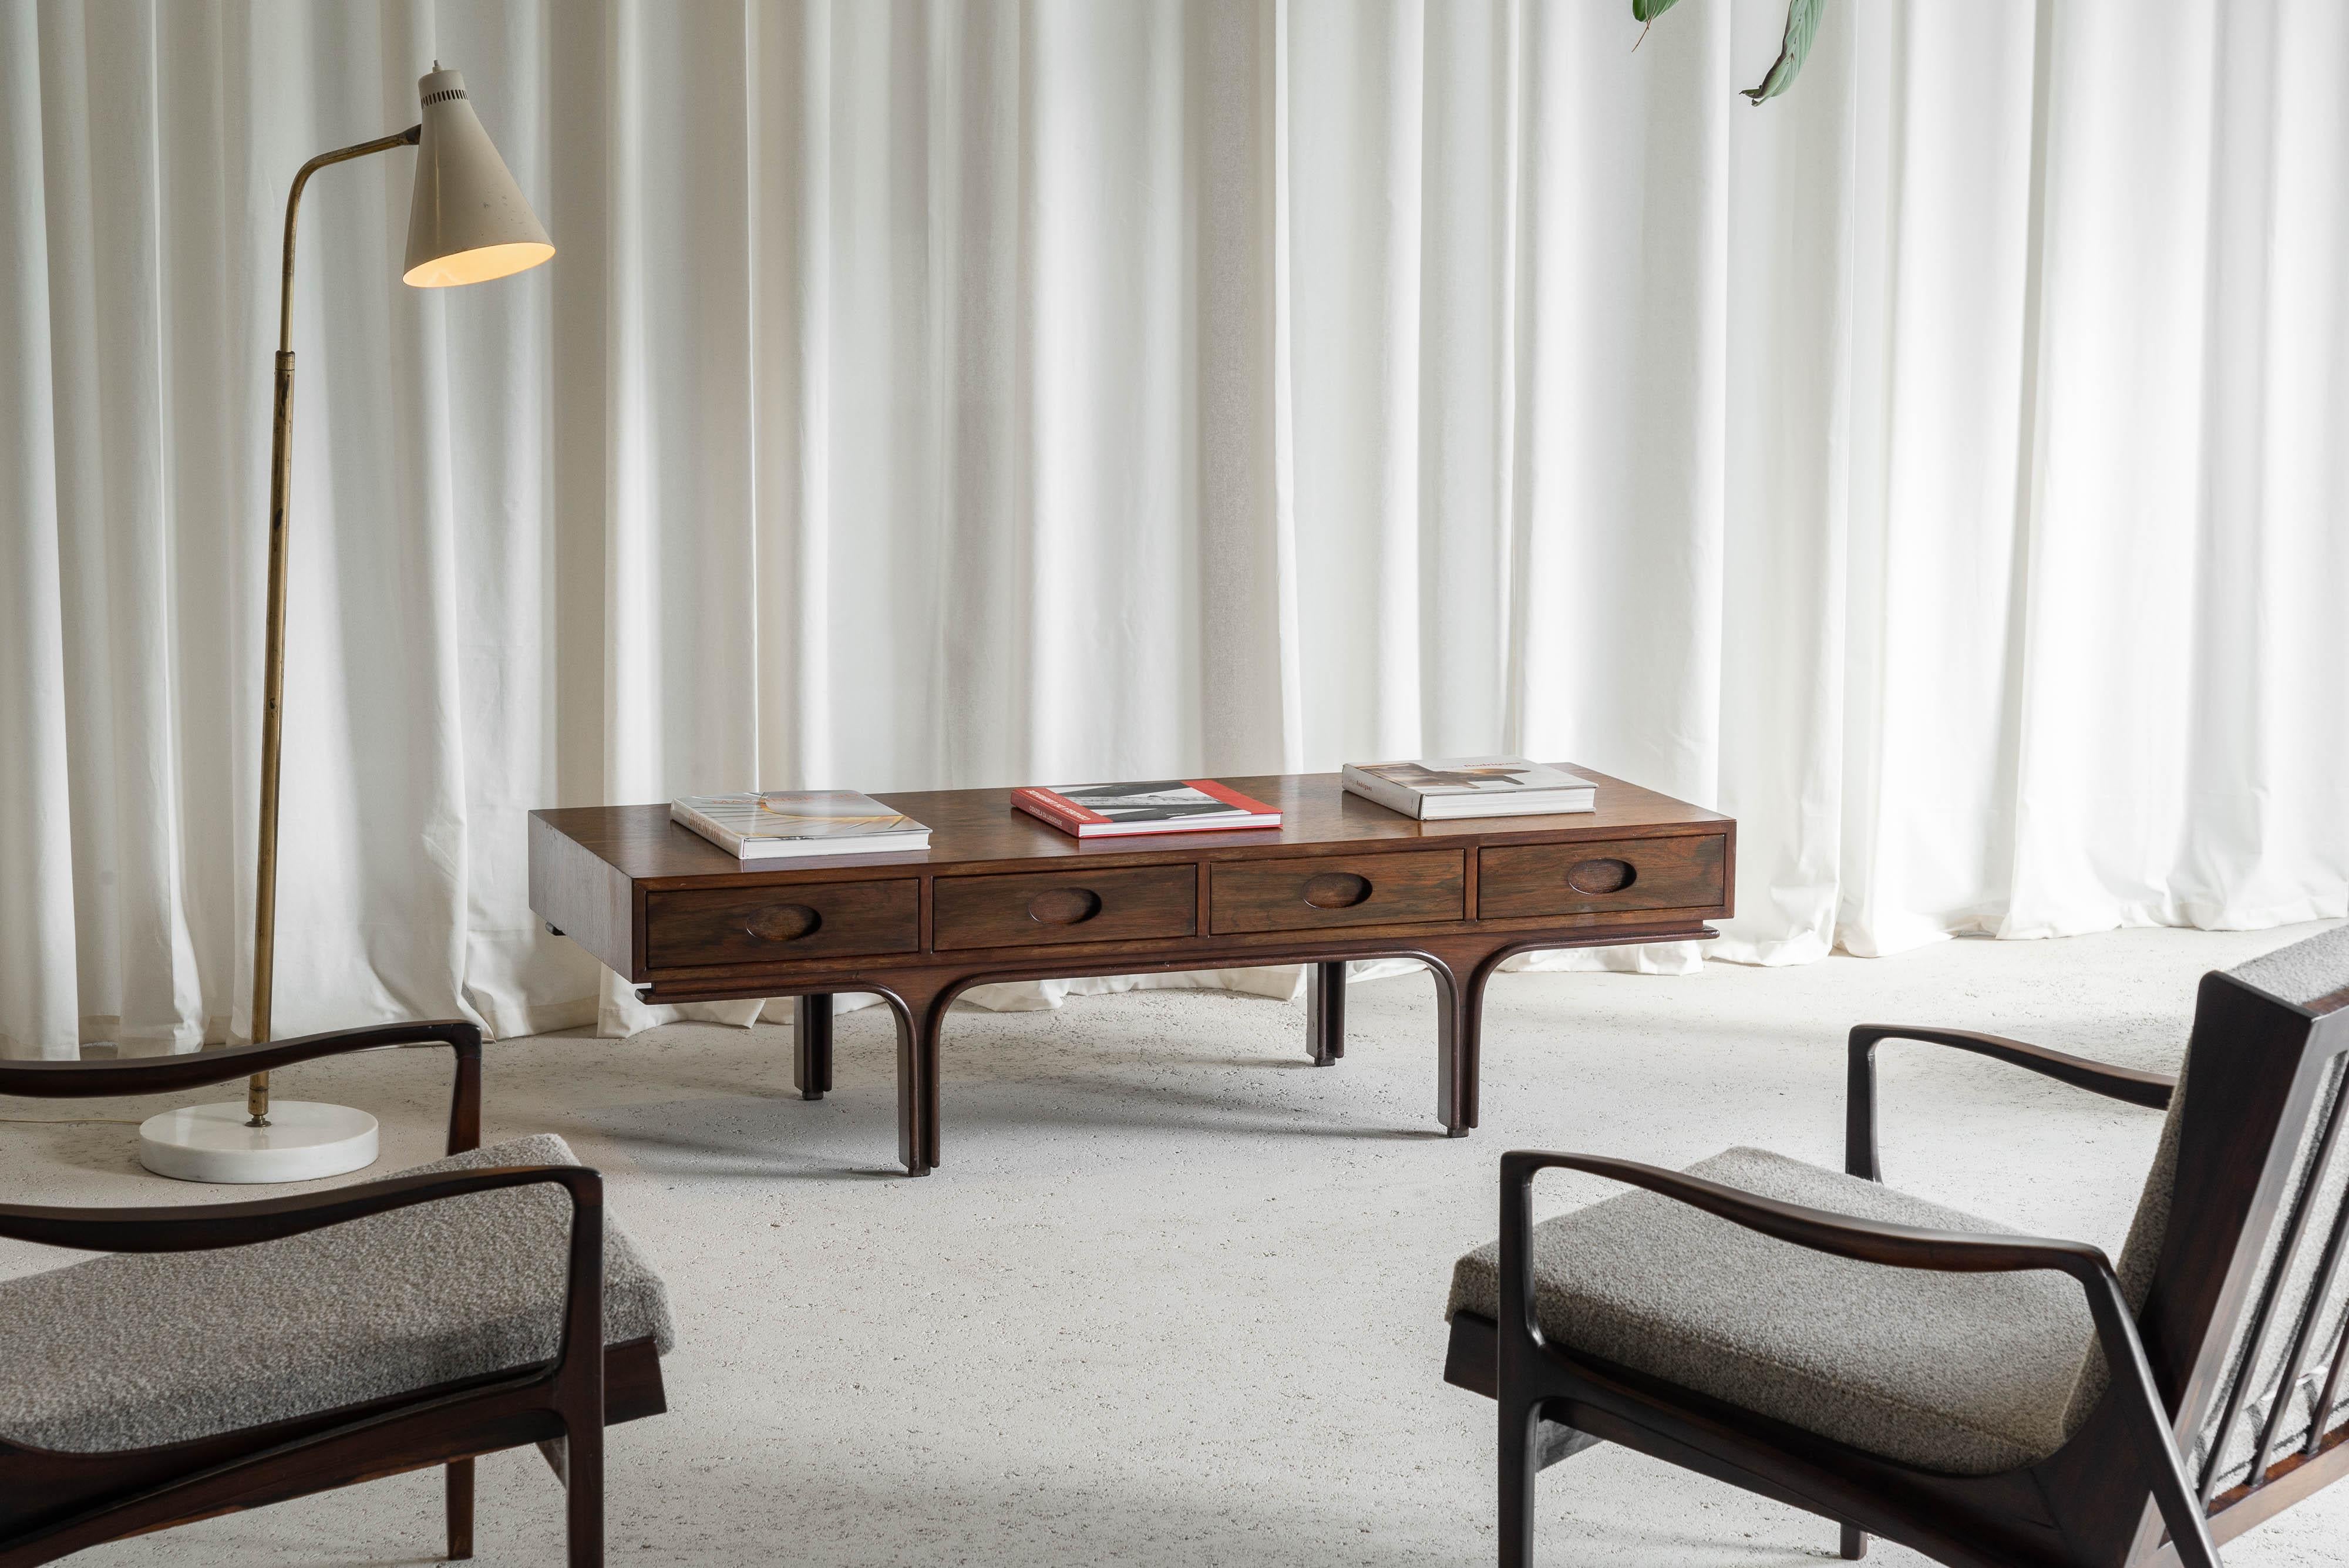 Cette table console à tiroirs spéciaux a été conçue par Gianfranco Frattini et fabriquée par Bernini en Italie en 1957. La polyvalence est la principale caractéristique de cette pièce. Vous pouvez l'utiliser au milieu d'une pièce, comme table basse,